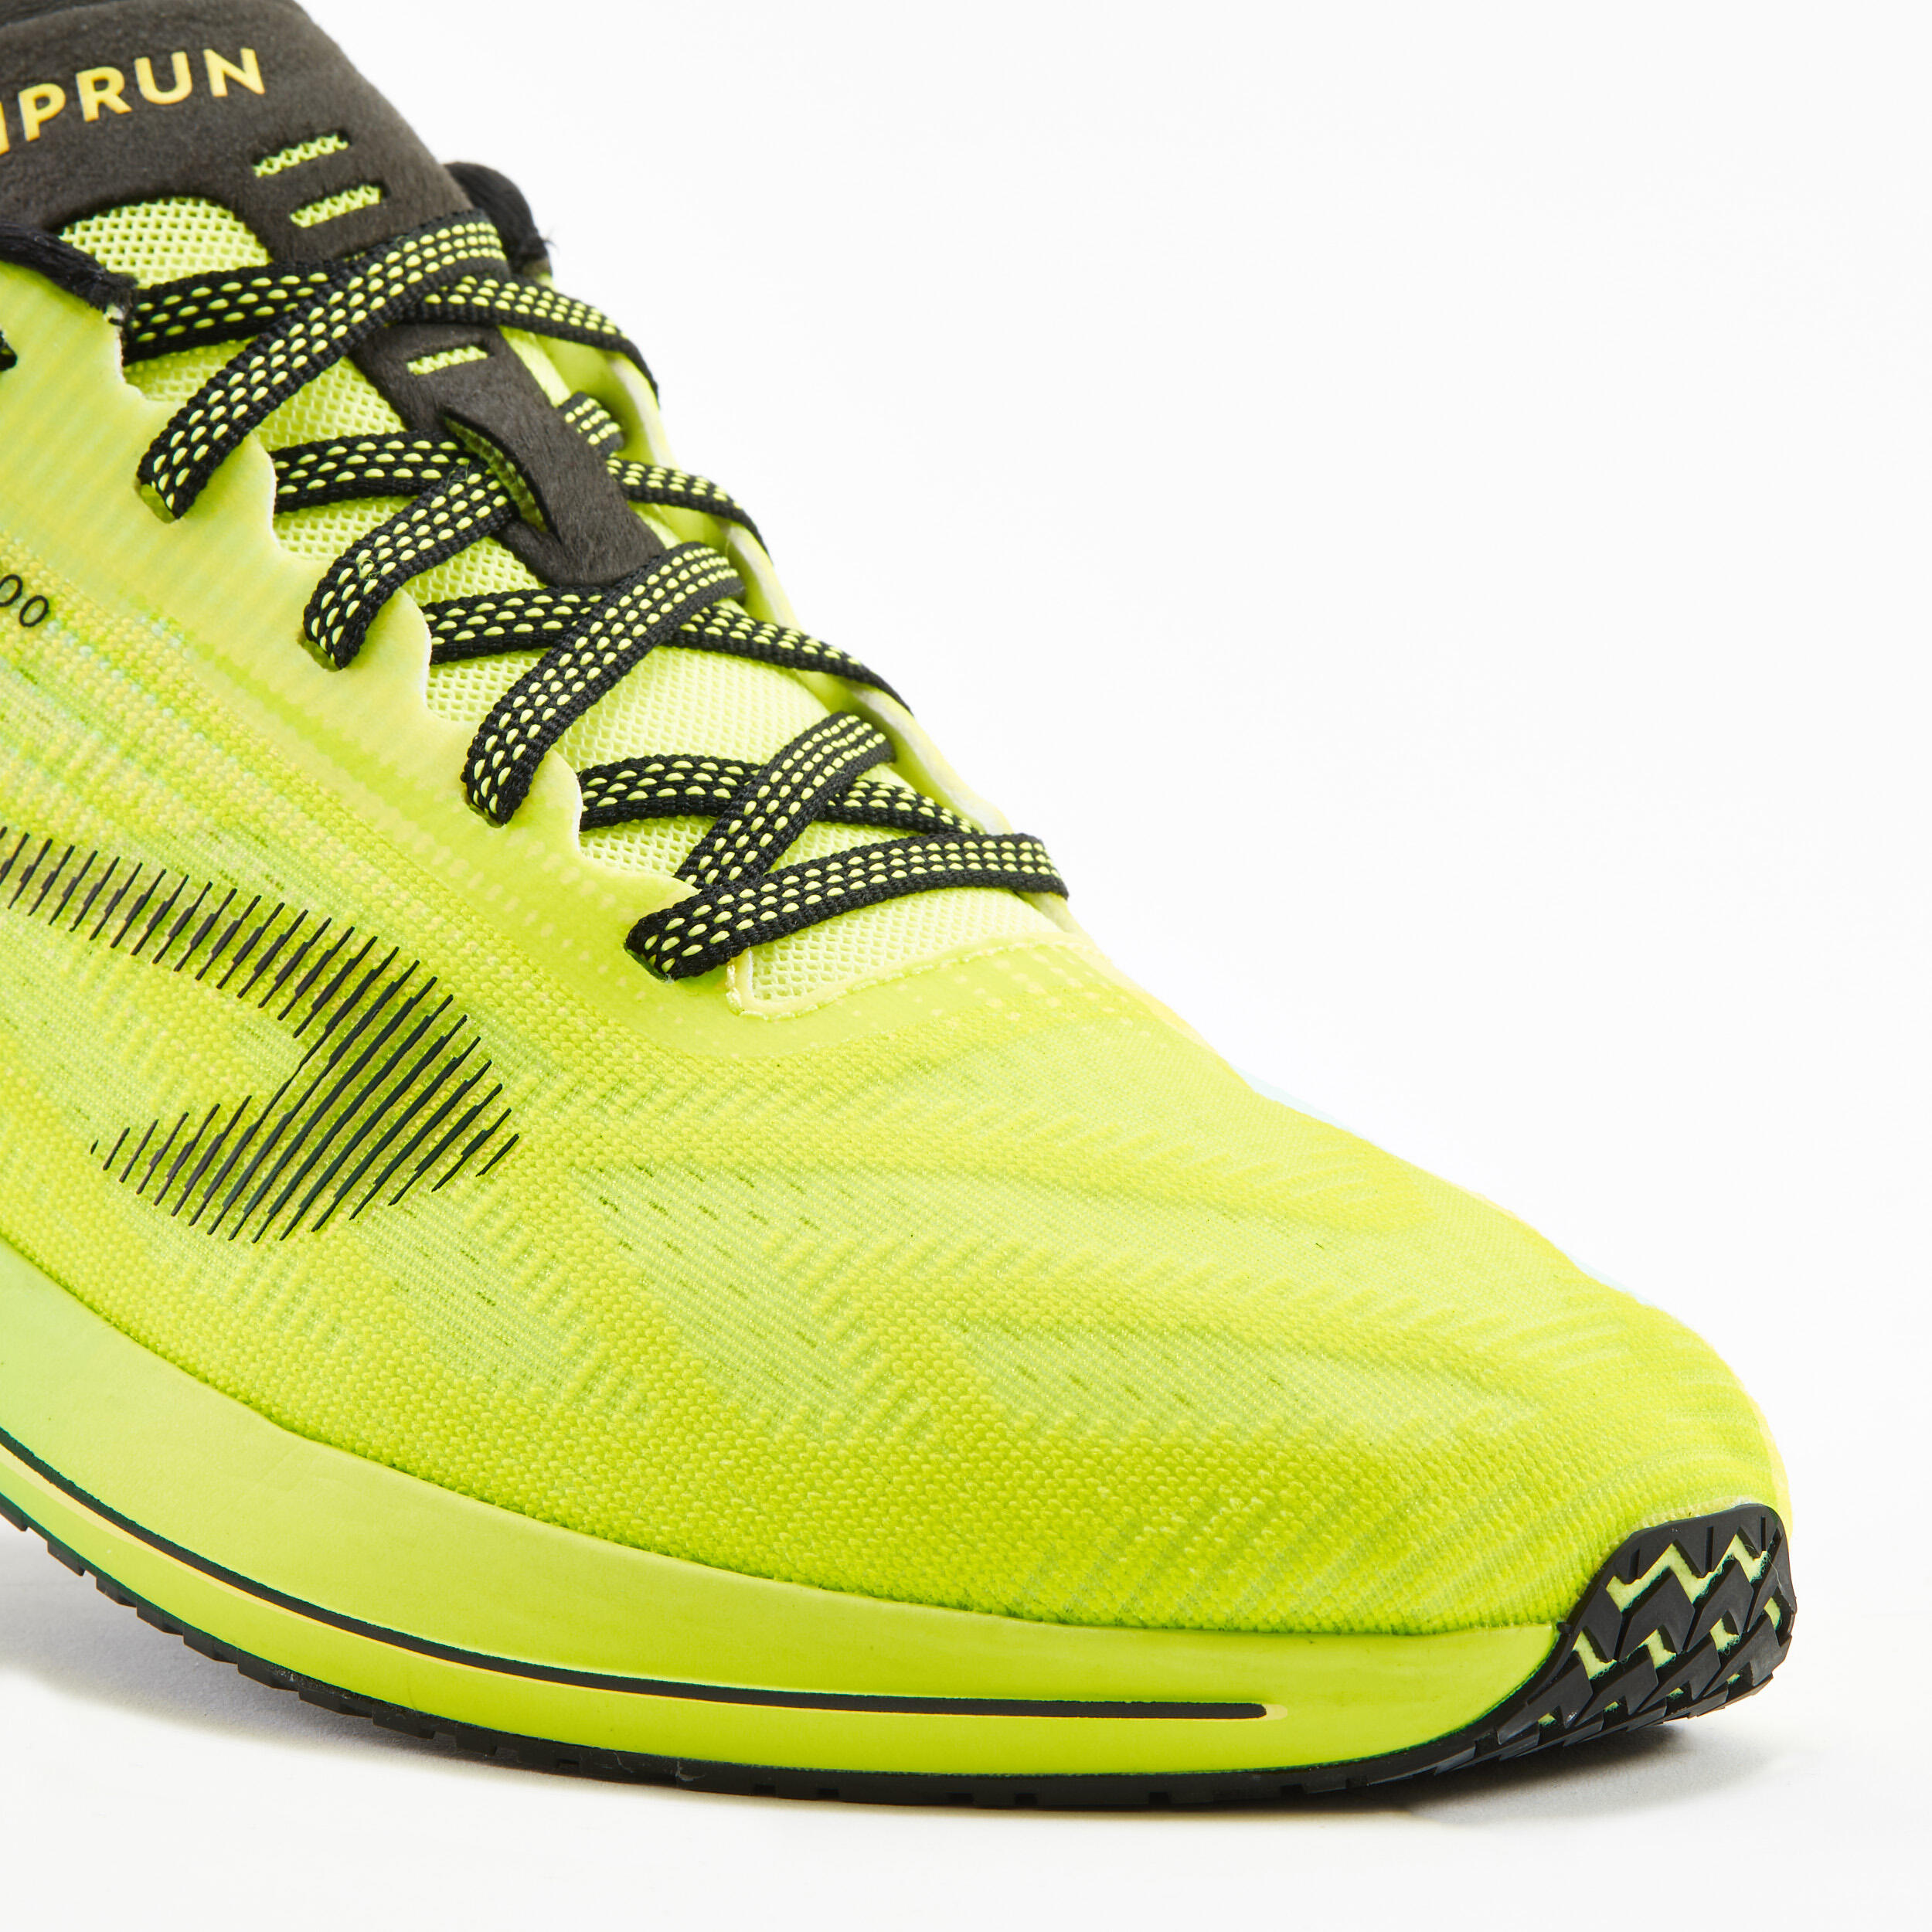 Men's running shoes - KIPRUN KD800 - green yellow 6/8